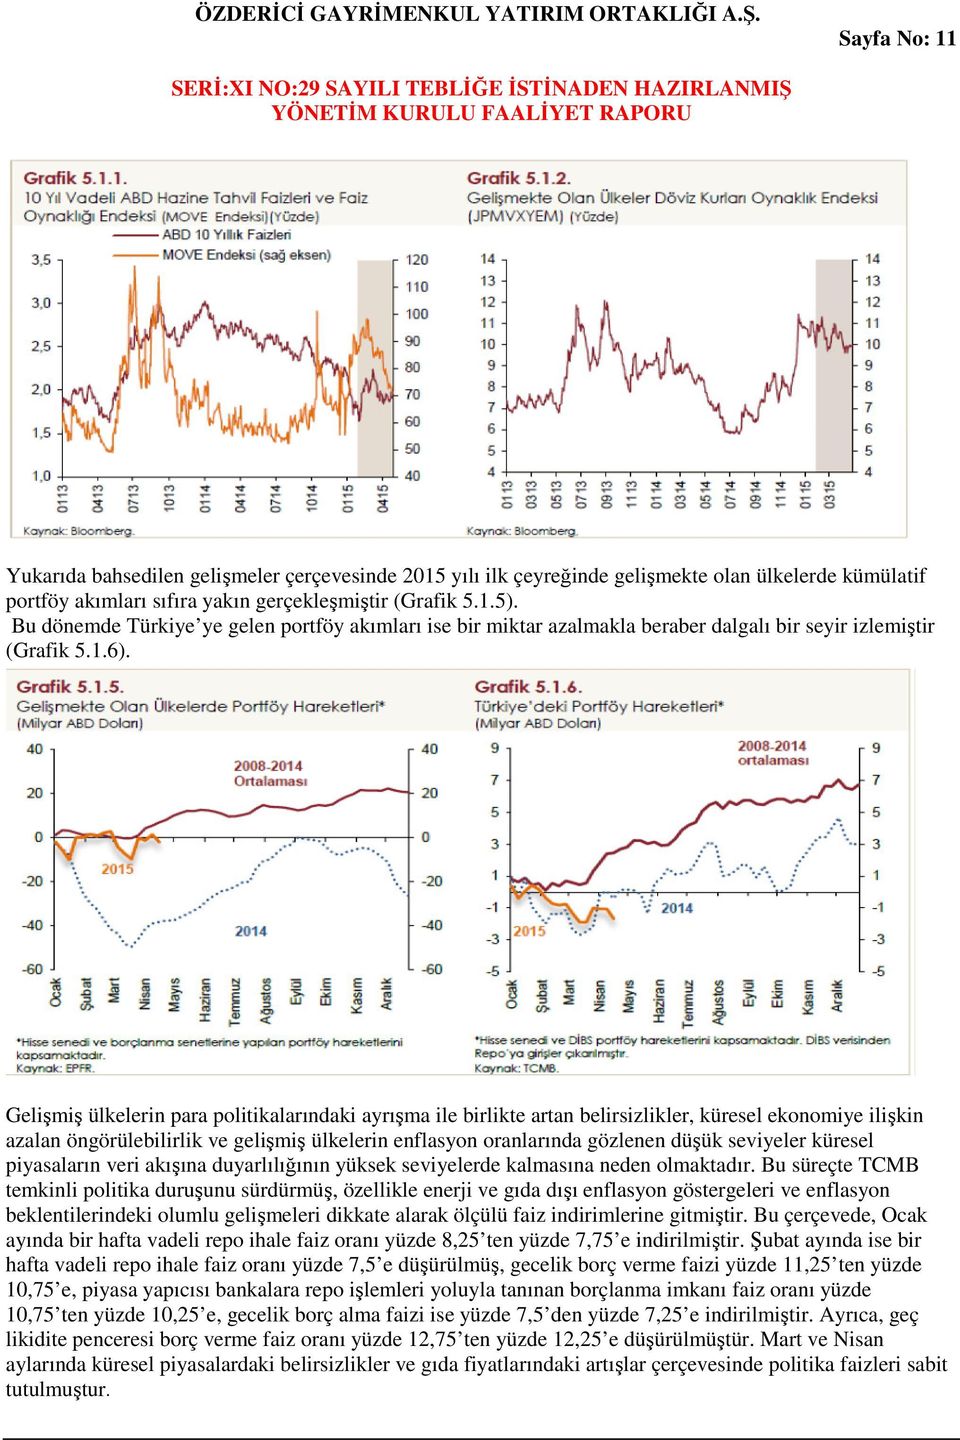 Gelişmiş ülkelerin para politikalarındaki ayrışma ile birlikte artan belirsizlikler, küresel ekonomiye ilişkin azalan öngörülebilirlik ve gelişmiş ülkelerin enflasyon oranlarında gözlenen düşük